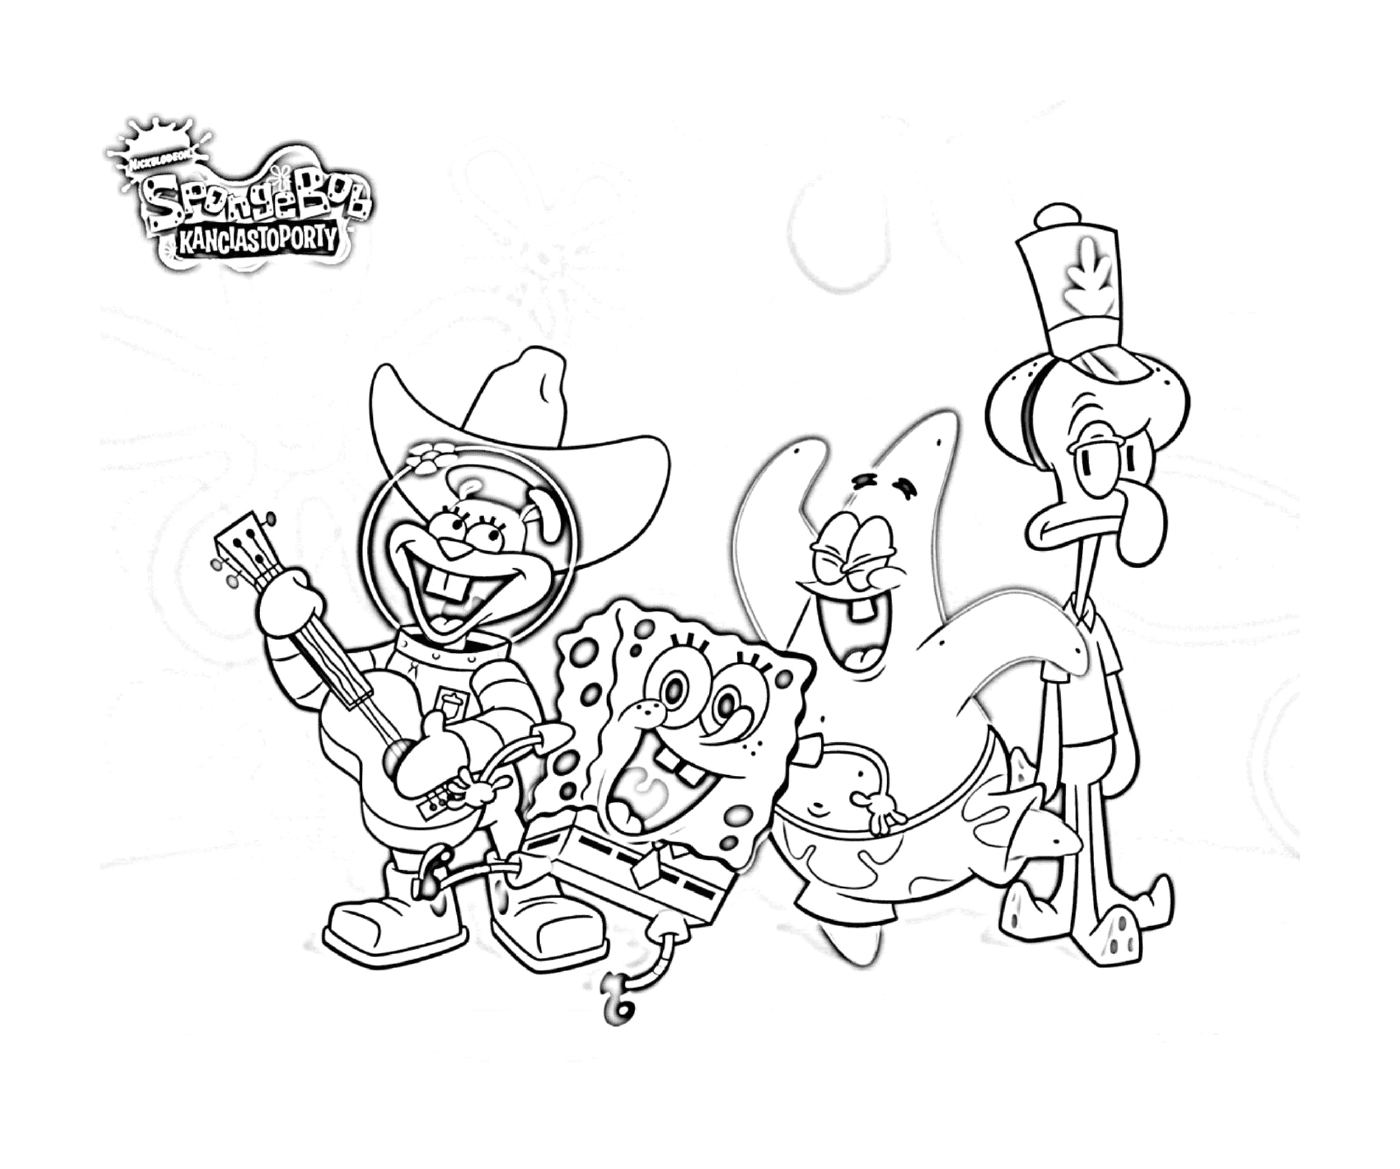  Pawning Bob the Sponge, eine Gruppe von Zeichentrickfiguren 